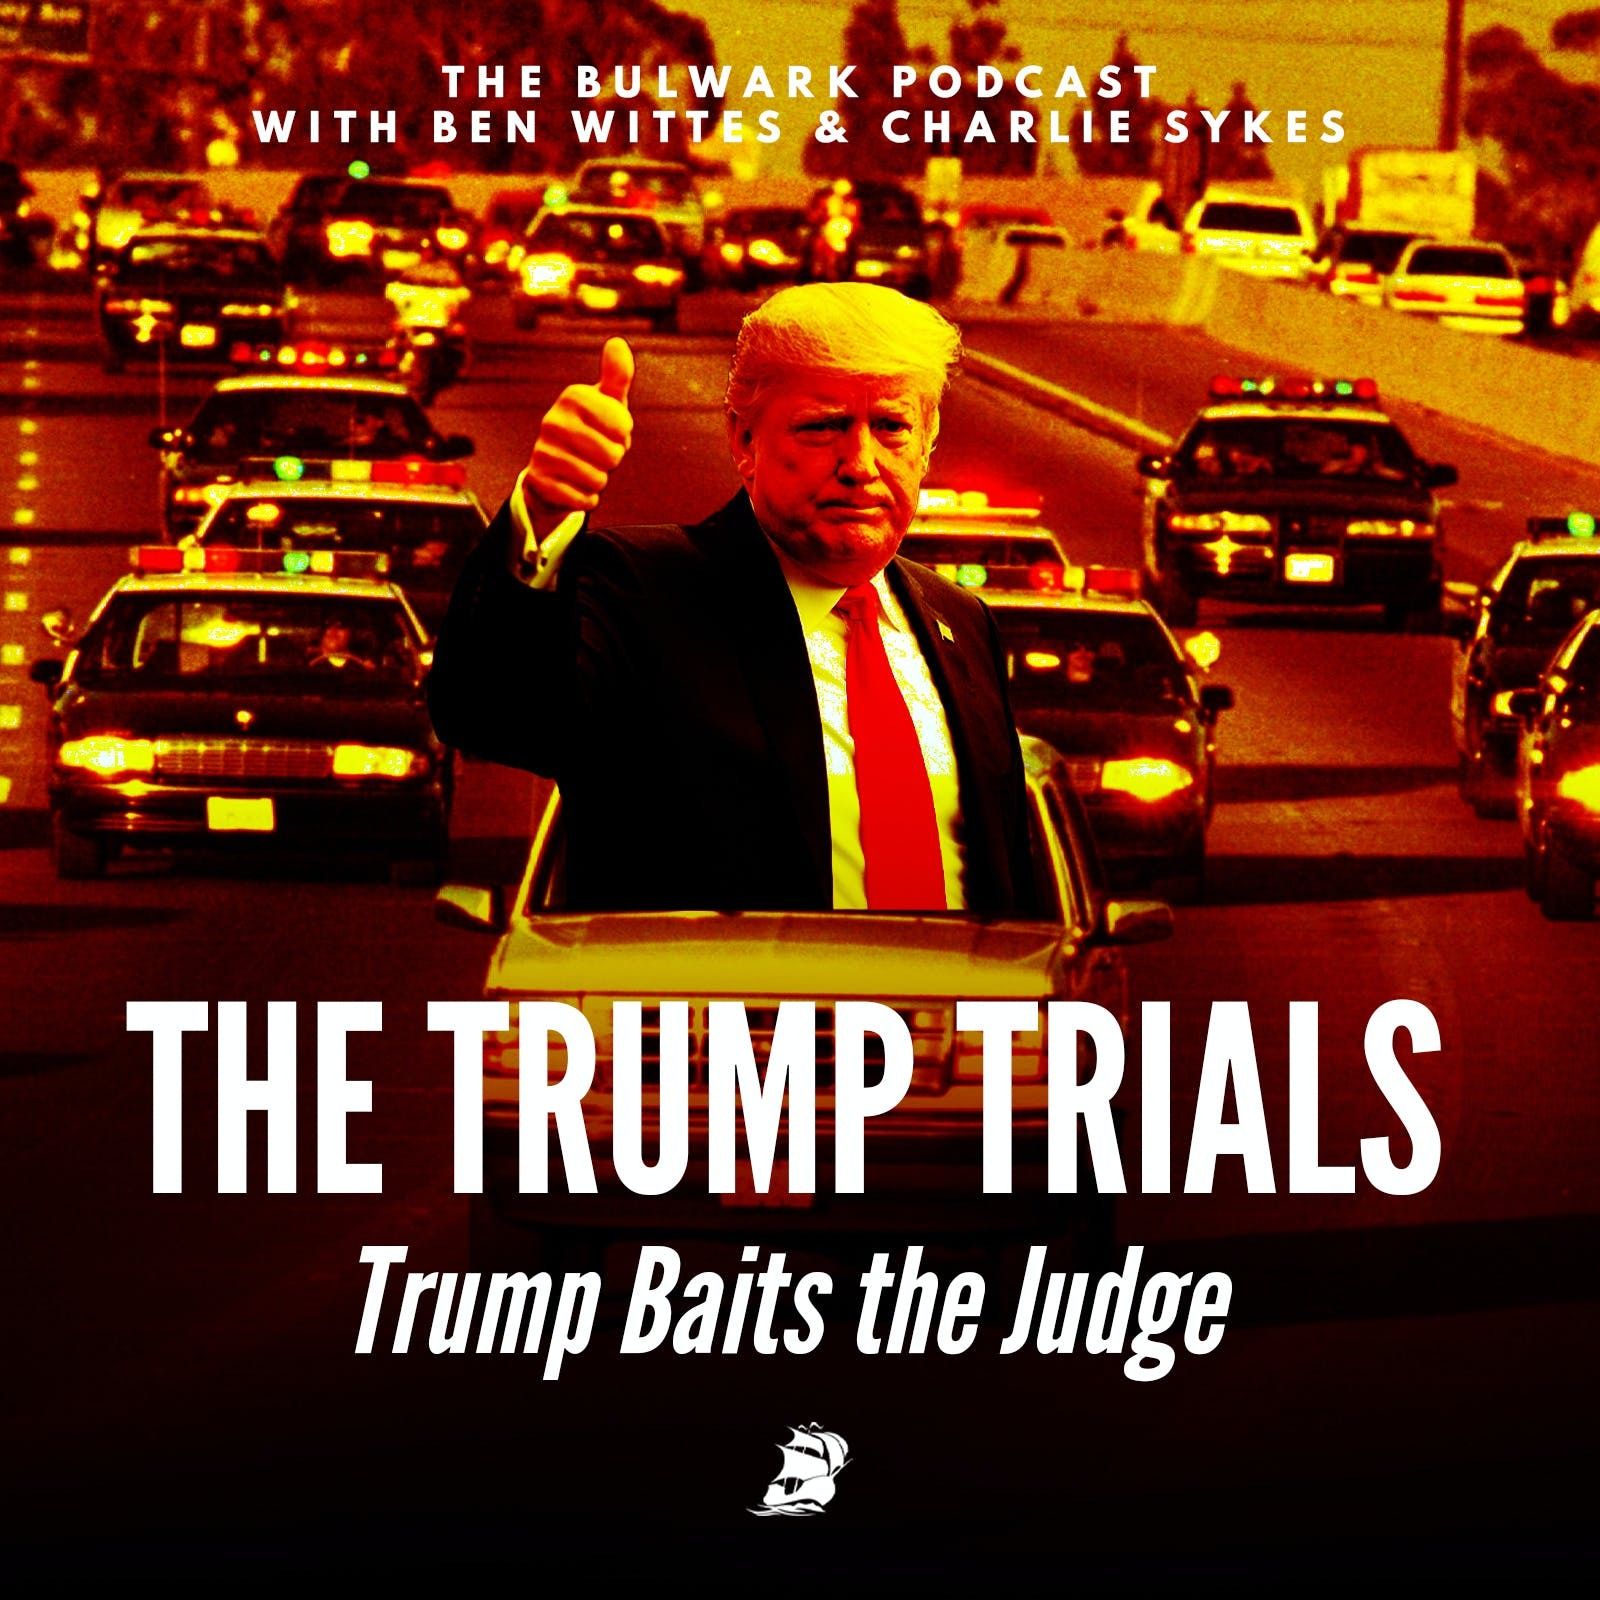 Trump Baits the Judge by The Bulwark Podcast